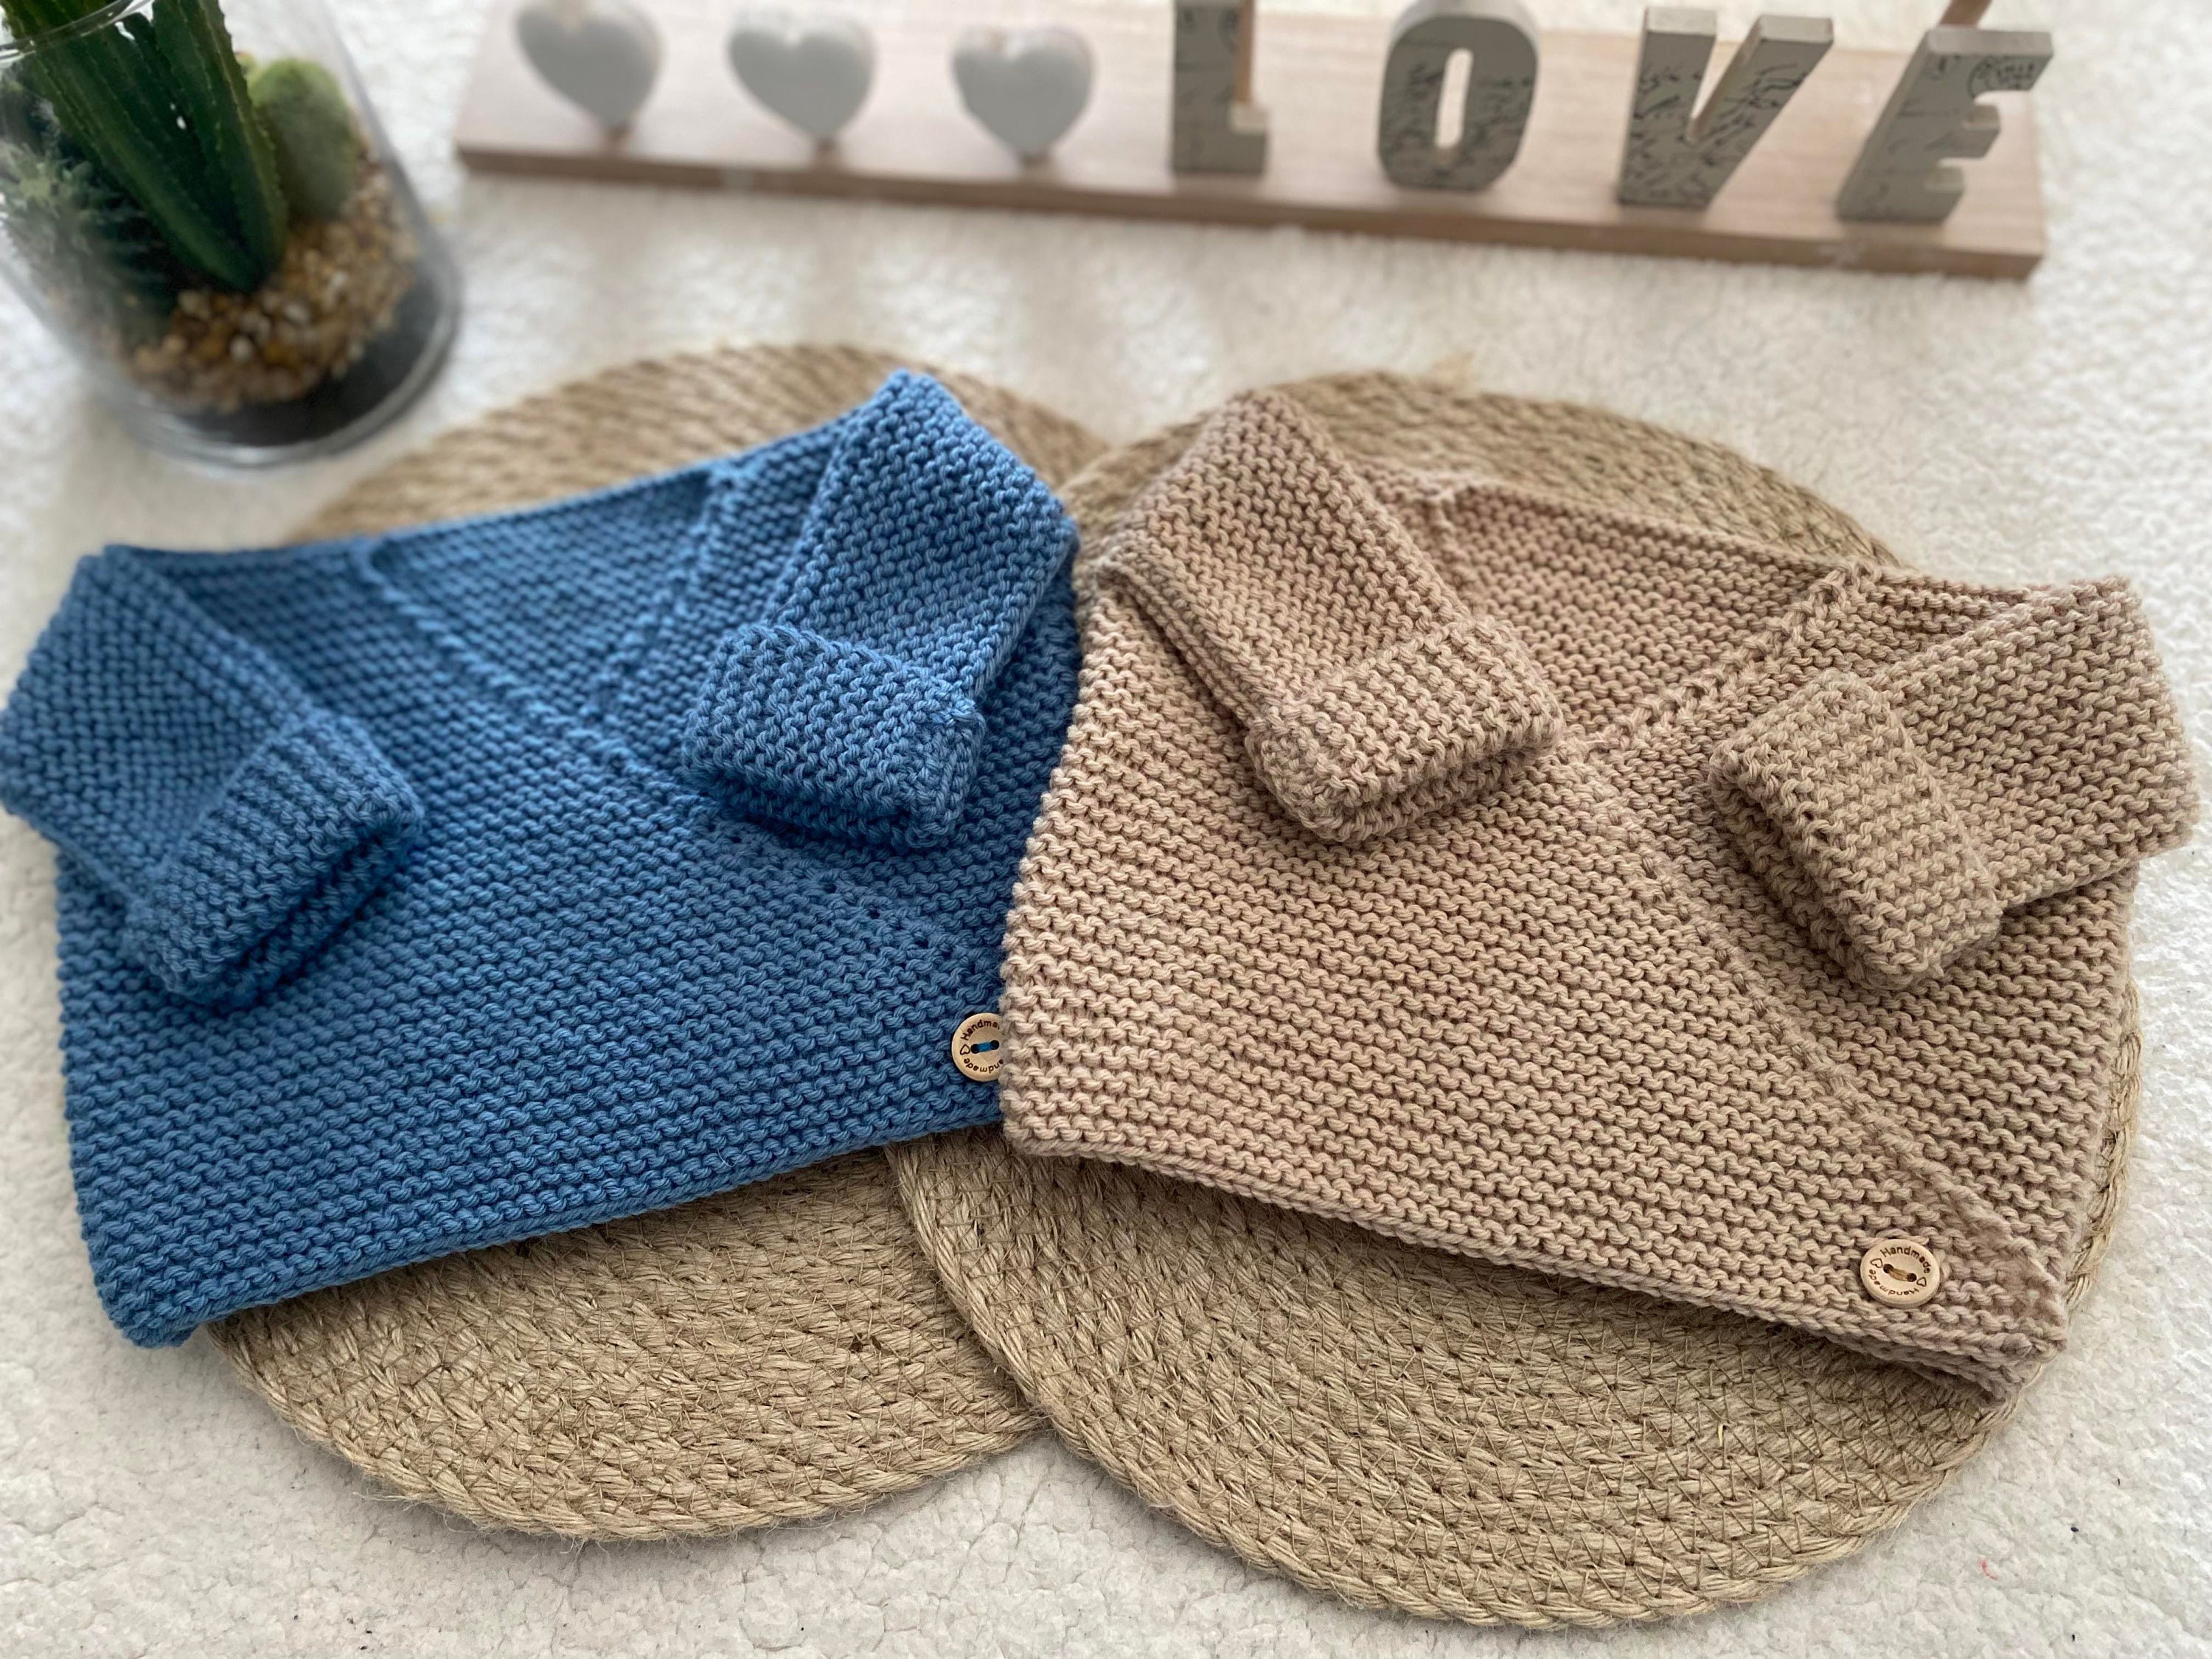 brassière de naissance bleu ciel tricotée main en 100% laine mérinos